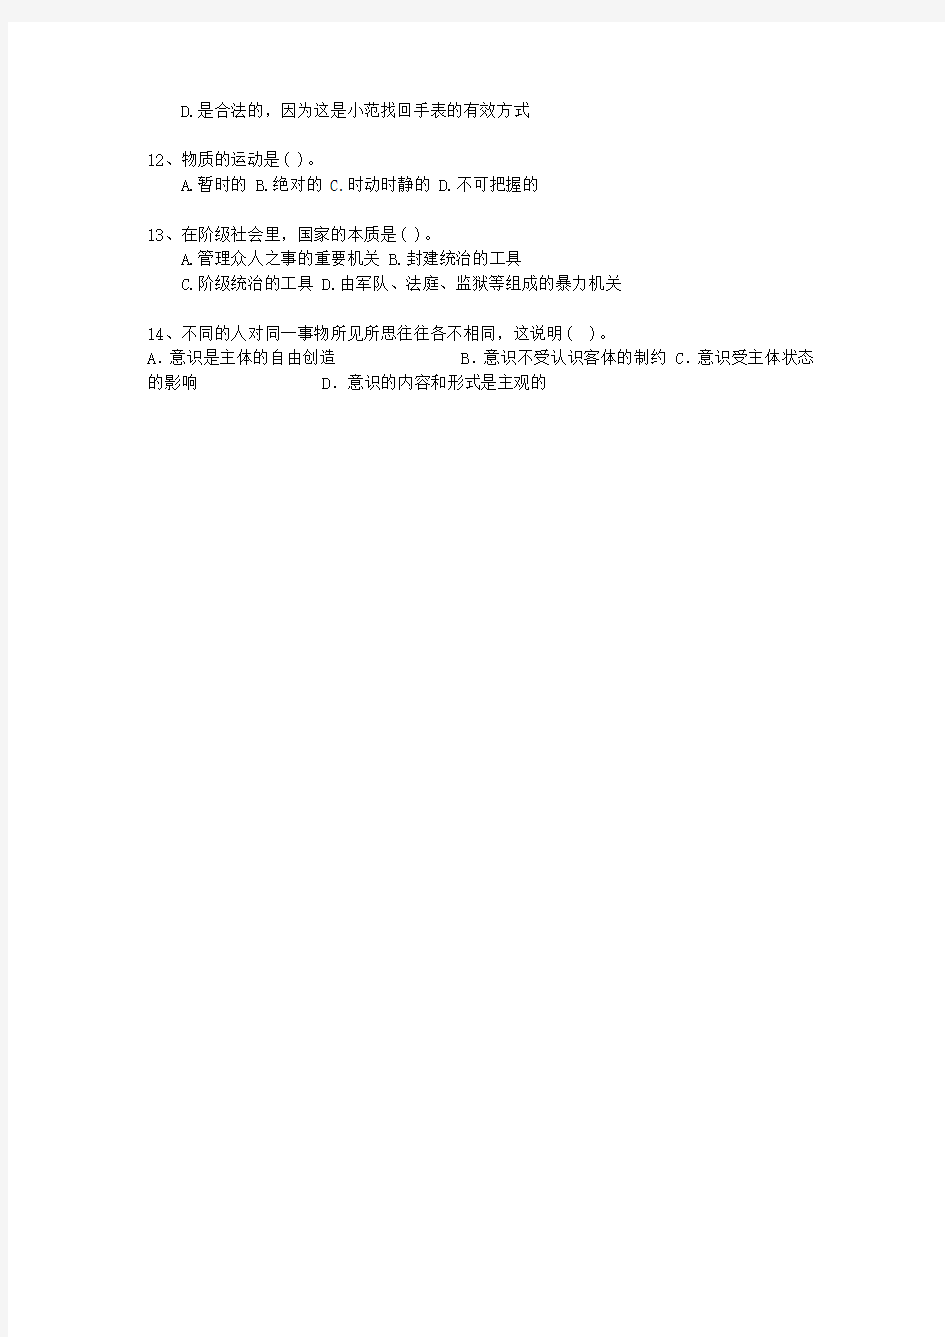 2013广西壮族自治区直属事业单位考试公共基础知识最新考试试题库